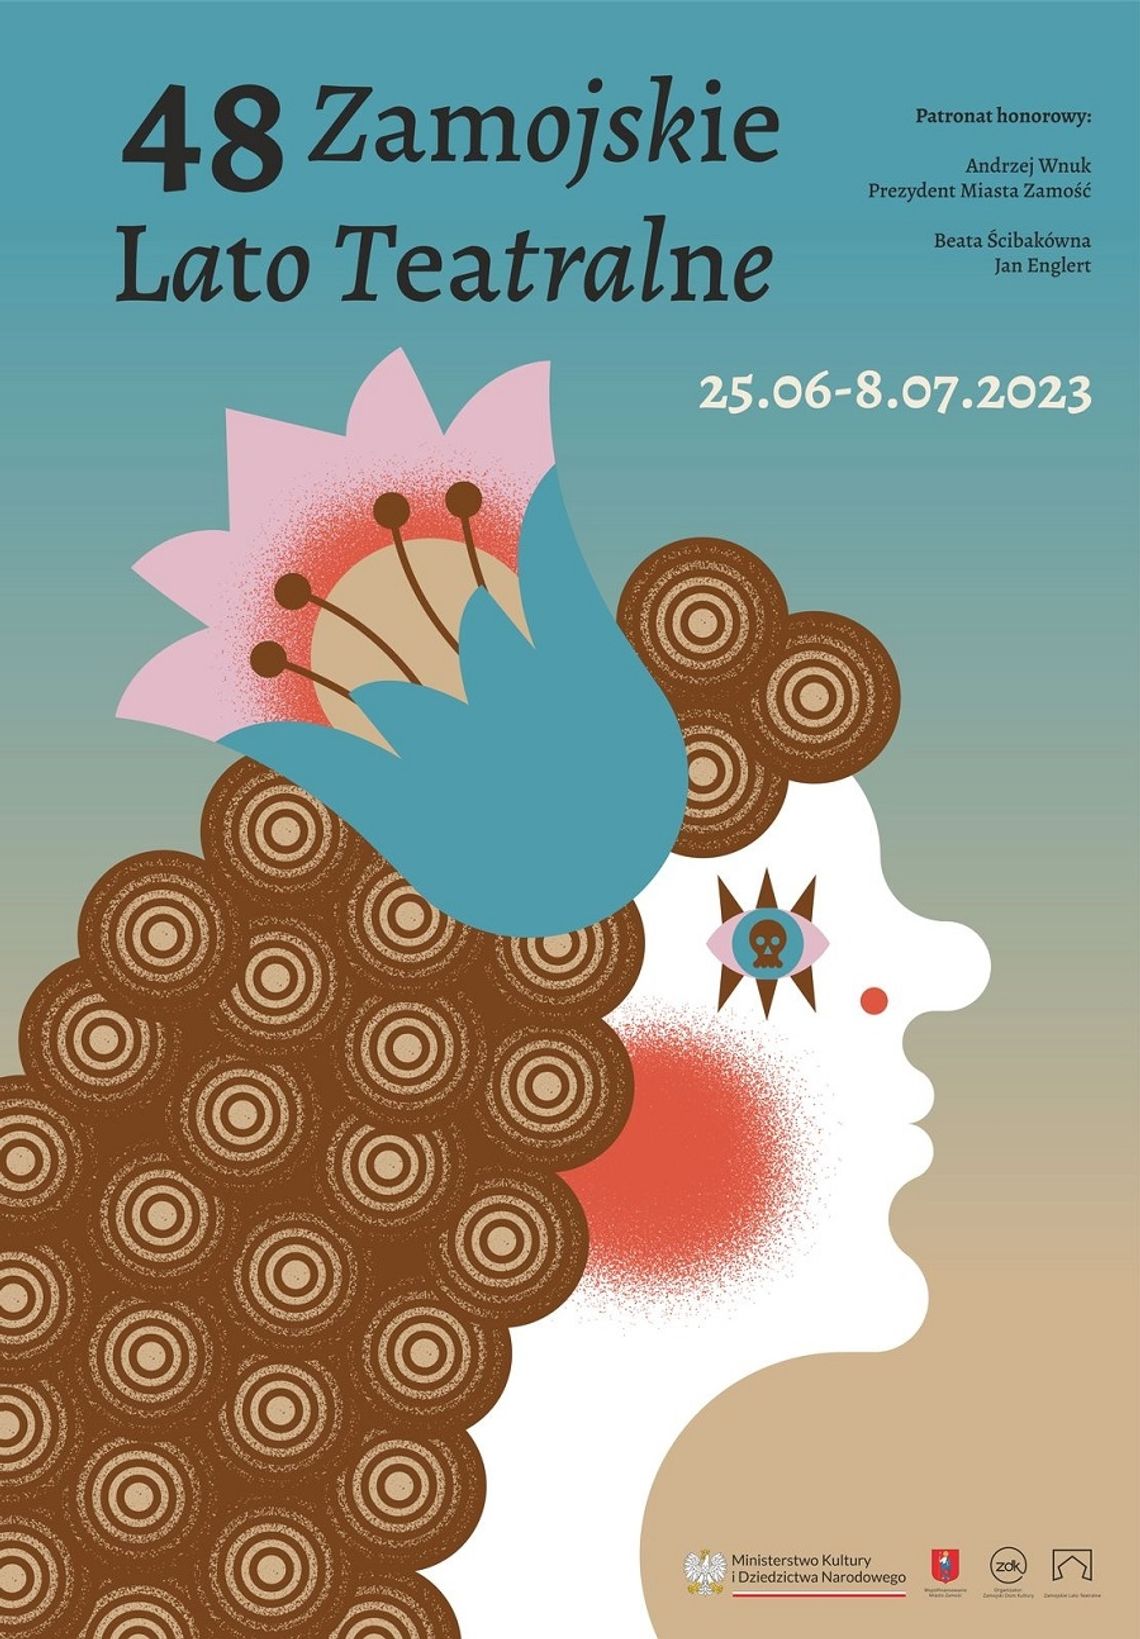 48. edycja Zamojskiego Lata Teatralnego rozpocznie się 25 czerwca, a zakończy 8 lipca.